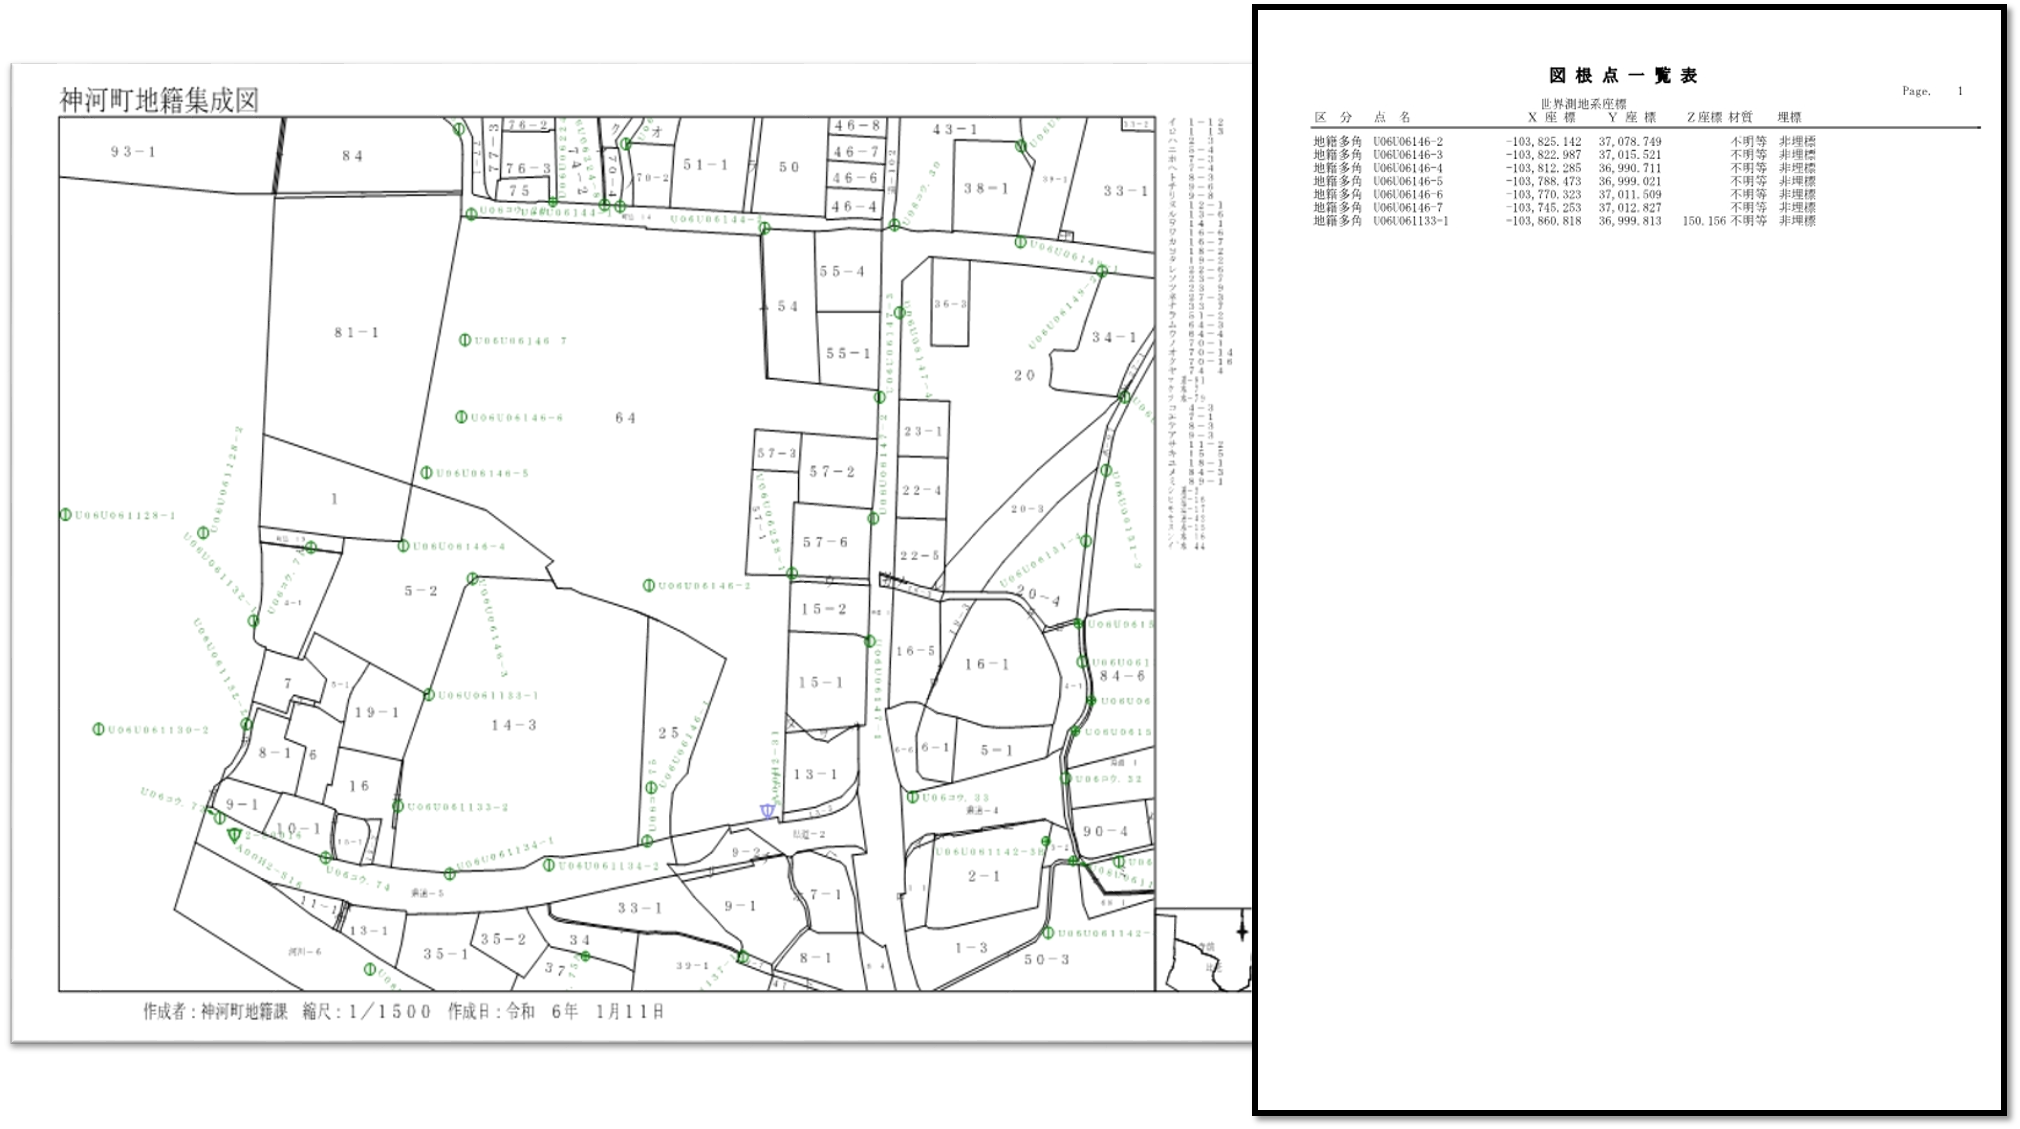 隣接する複数の土地の位置や形状が記載された図面に、測量基準点の位置を記載した図面と、その基準点の座標を添付した帳票です。